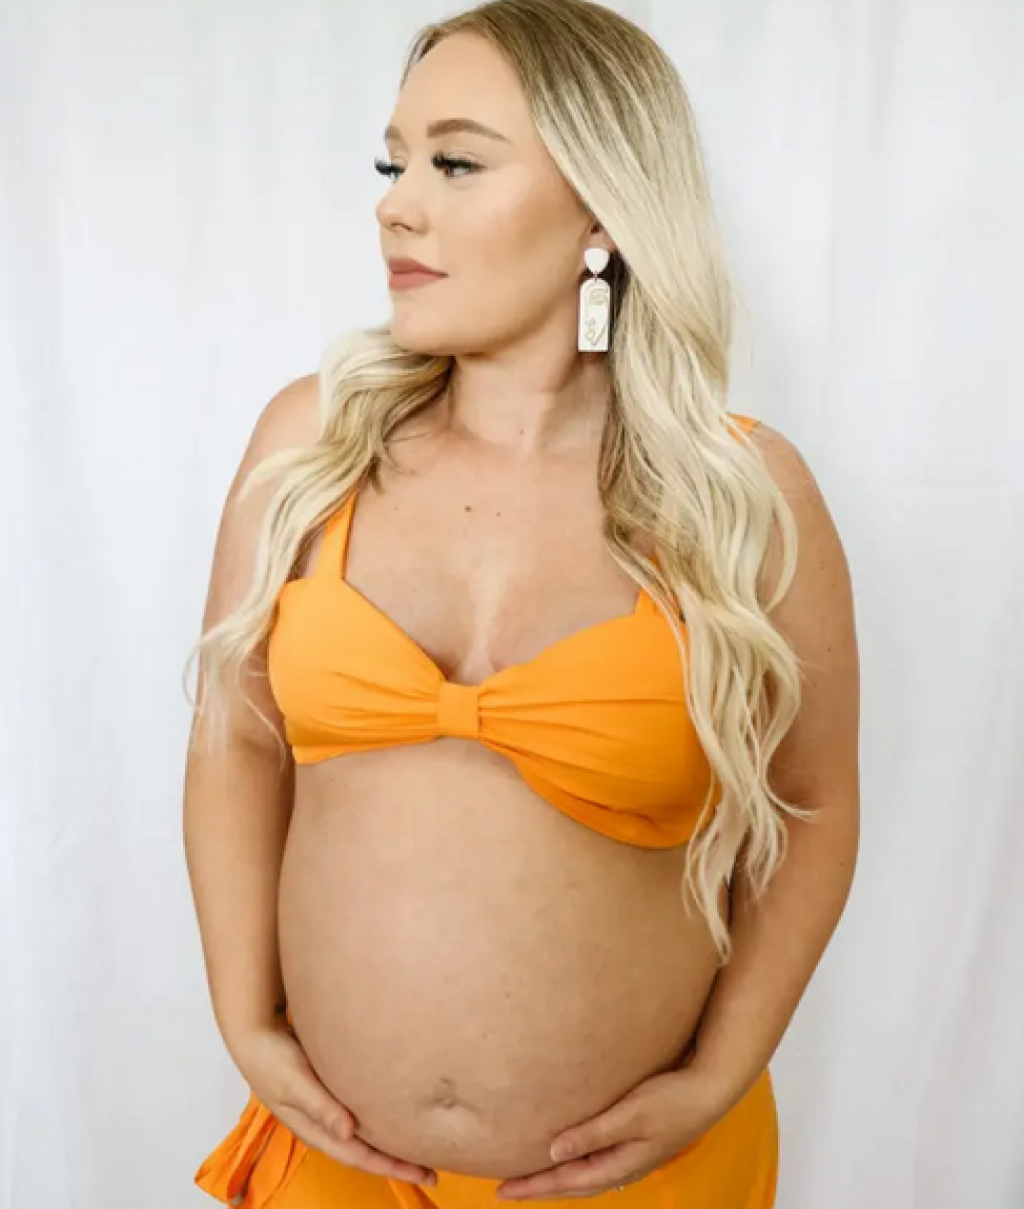 &lt;p&gt;Jaiden Ashlea zaprepastila se kada je u 18. tjednu trudnoće otkriveno da njen sin ima spina bifidu&lt;/p&gt;